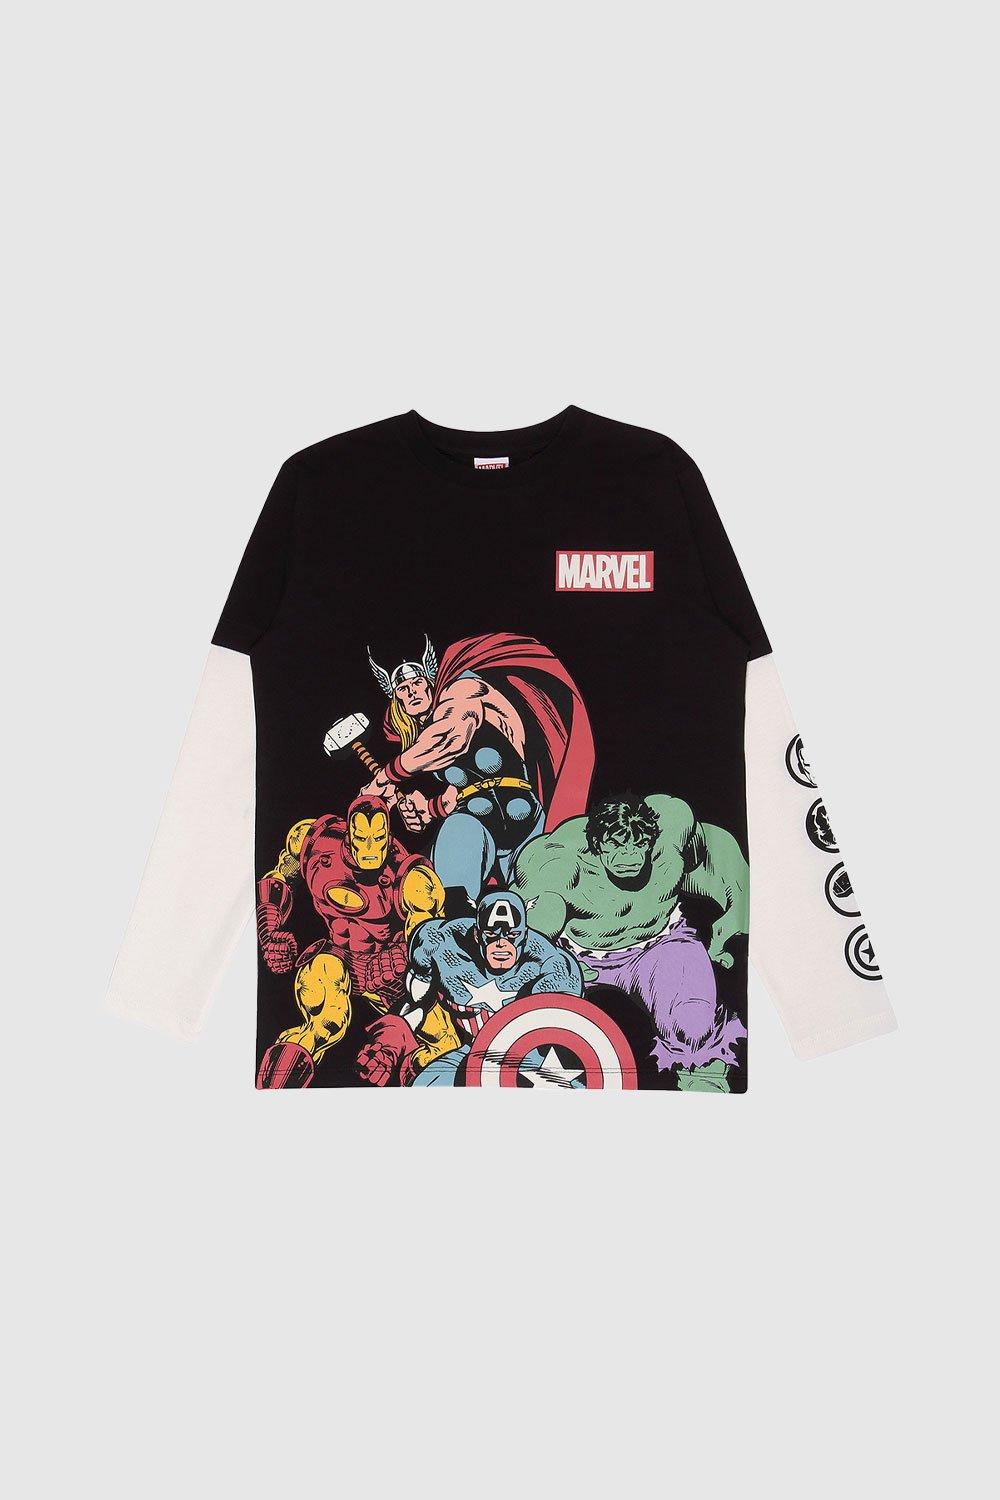 Avengers Assembled T-Shirt